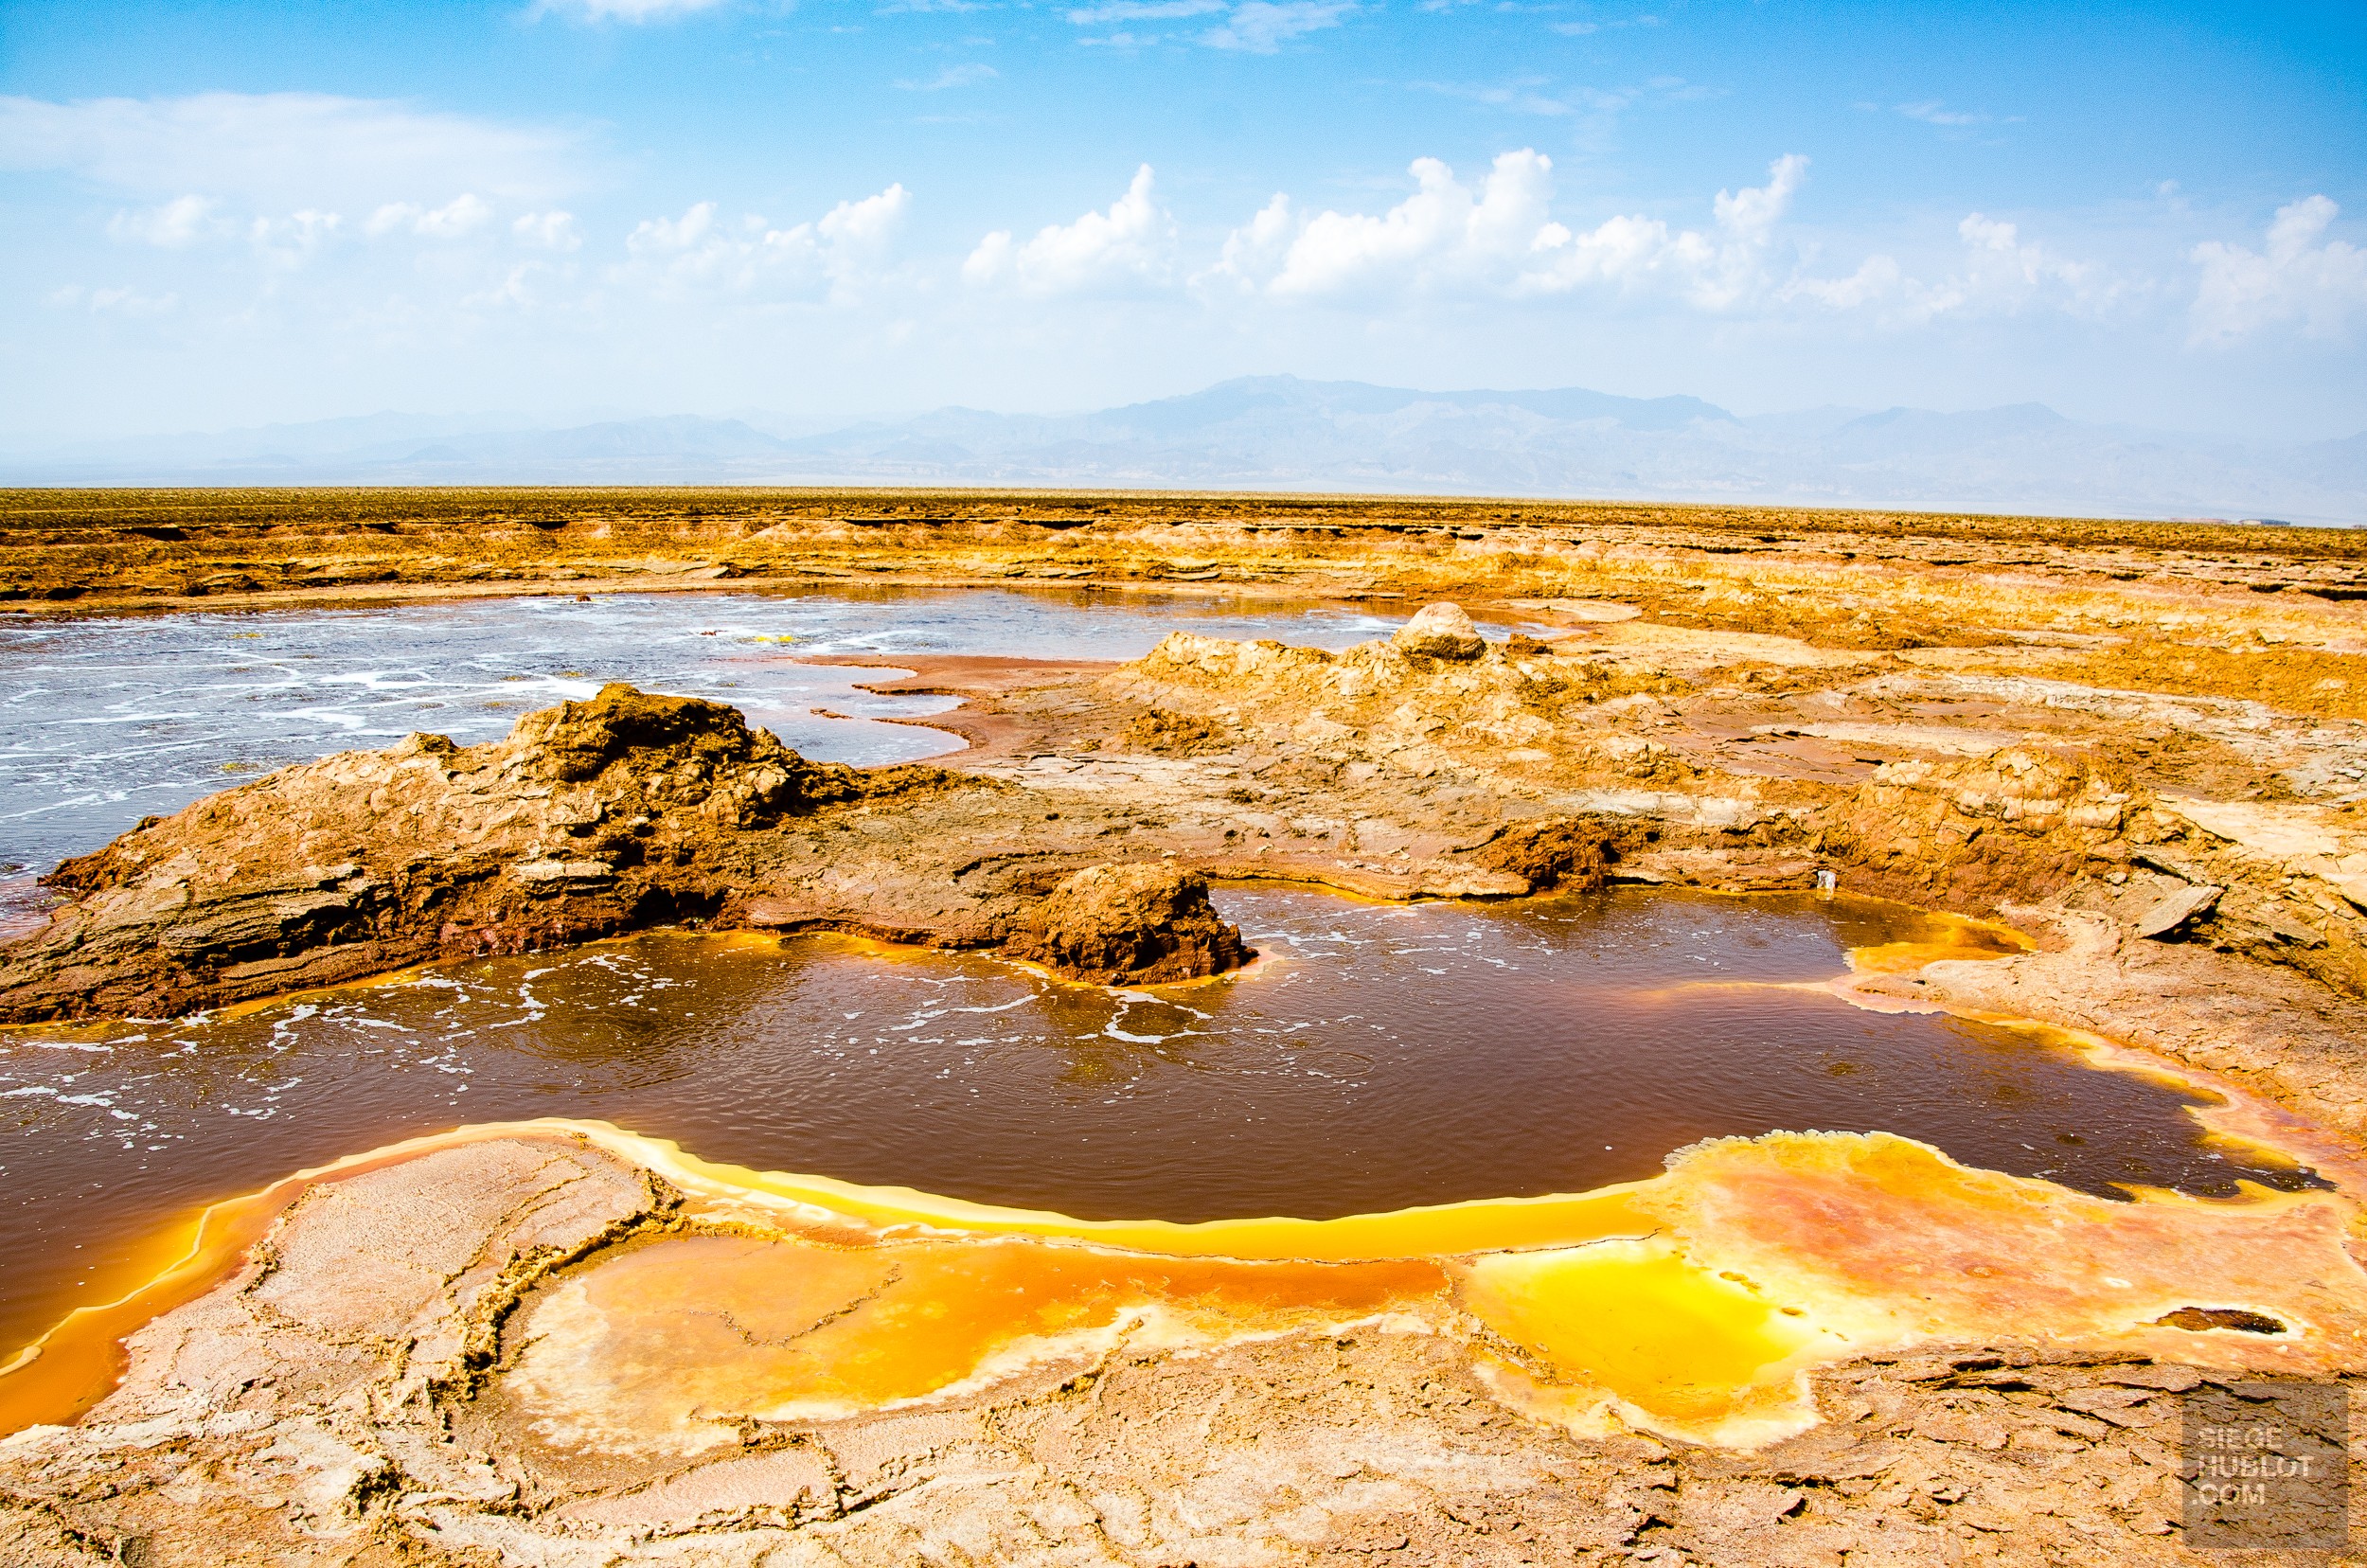 geyser sulfureux - Dallol - Visiter une autre planete: Danakil, Ethiopie - afrique, ethiopie